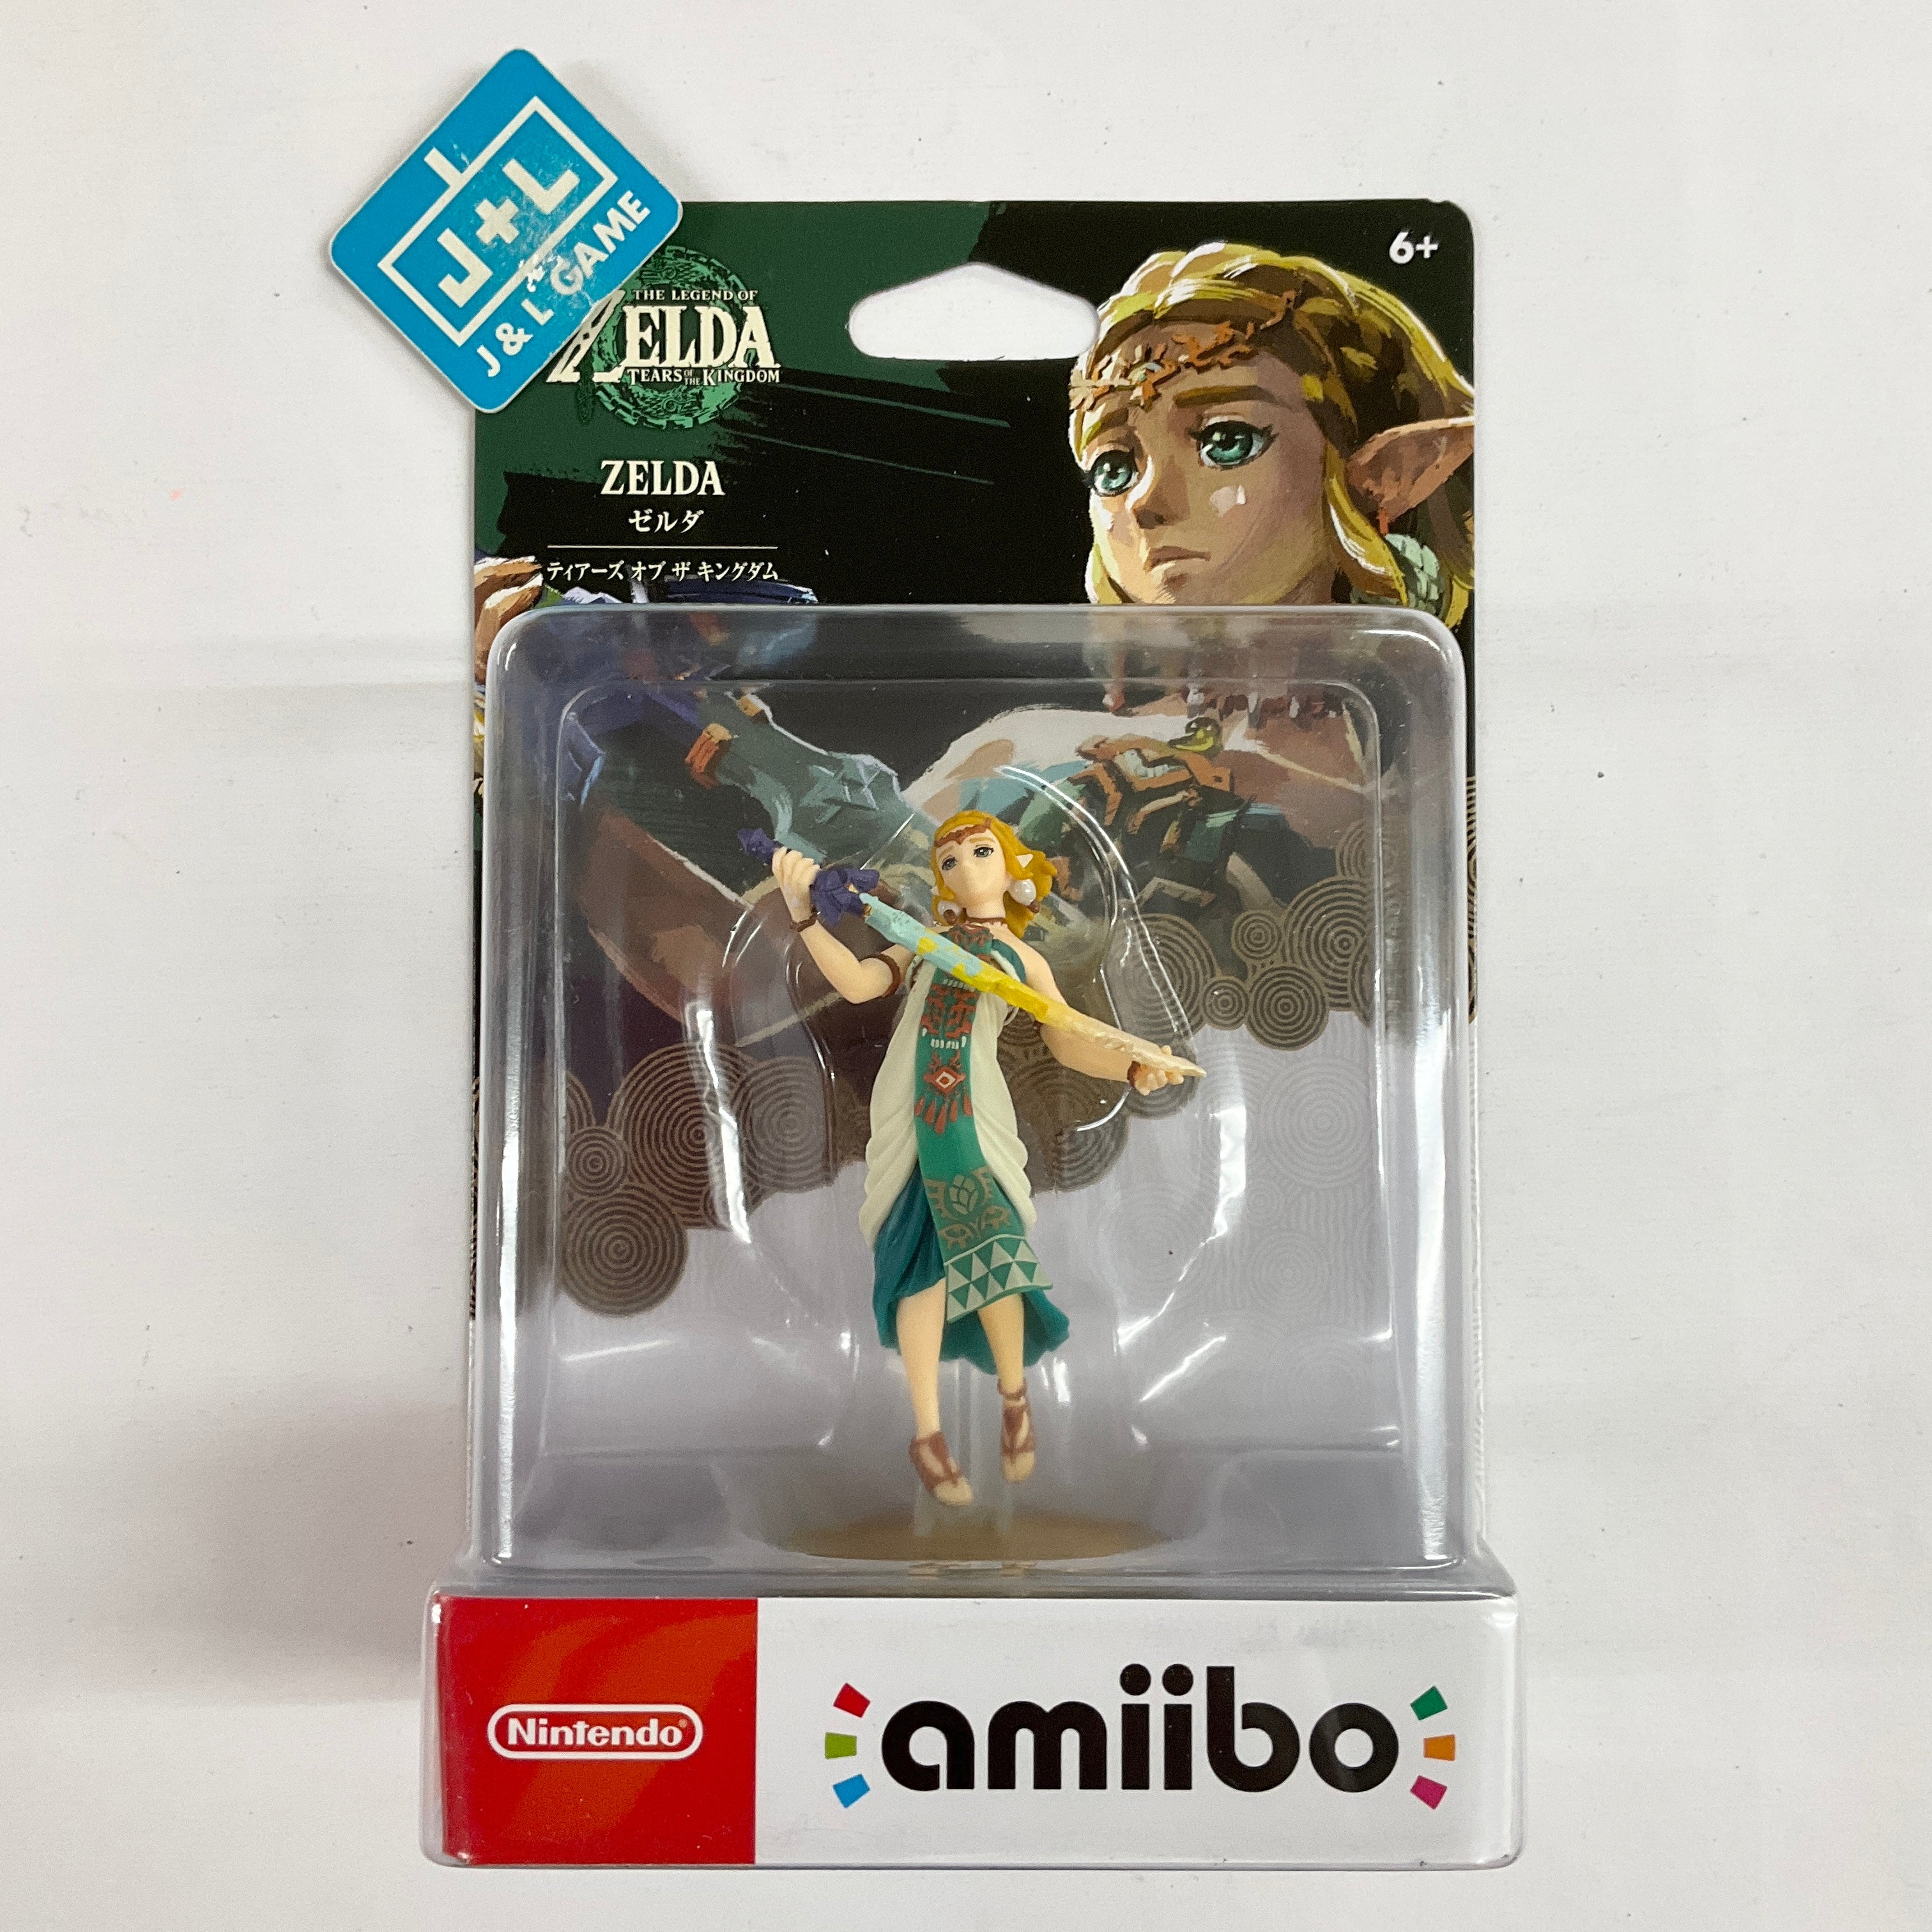 Nintendo amiibo The Legend of Zelda: Tears of the Kingdom - Link amiibo